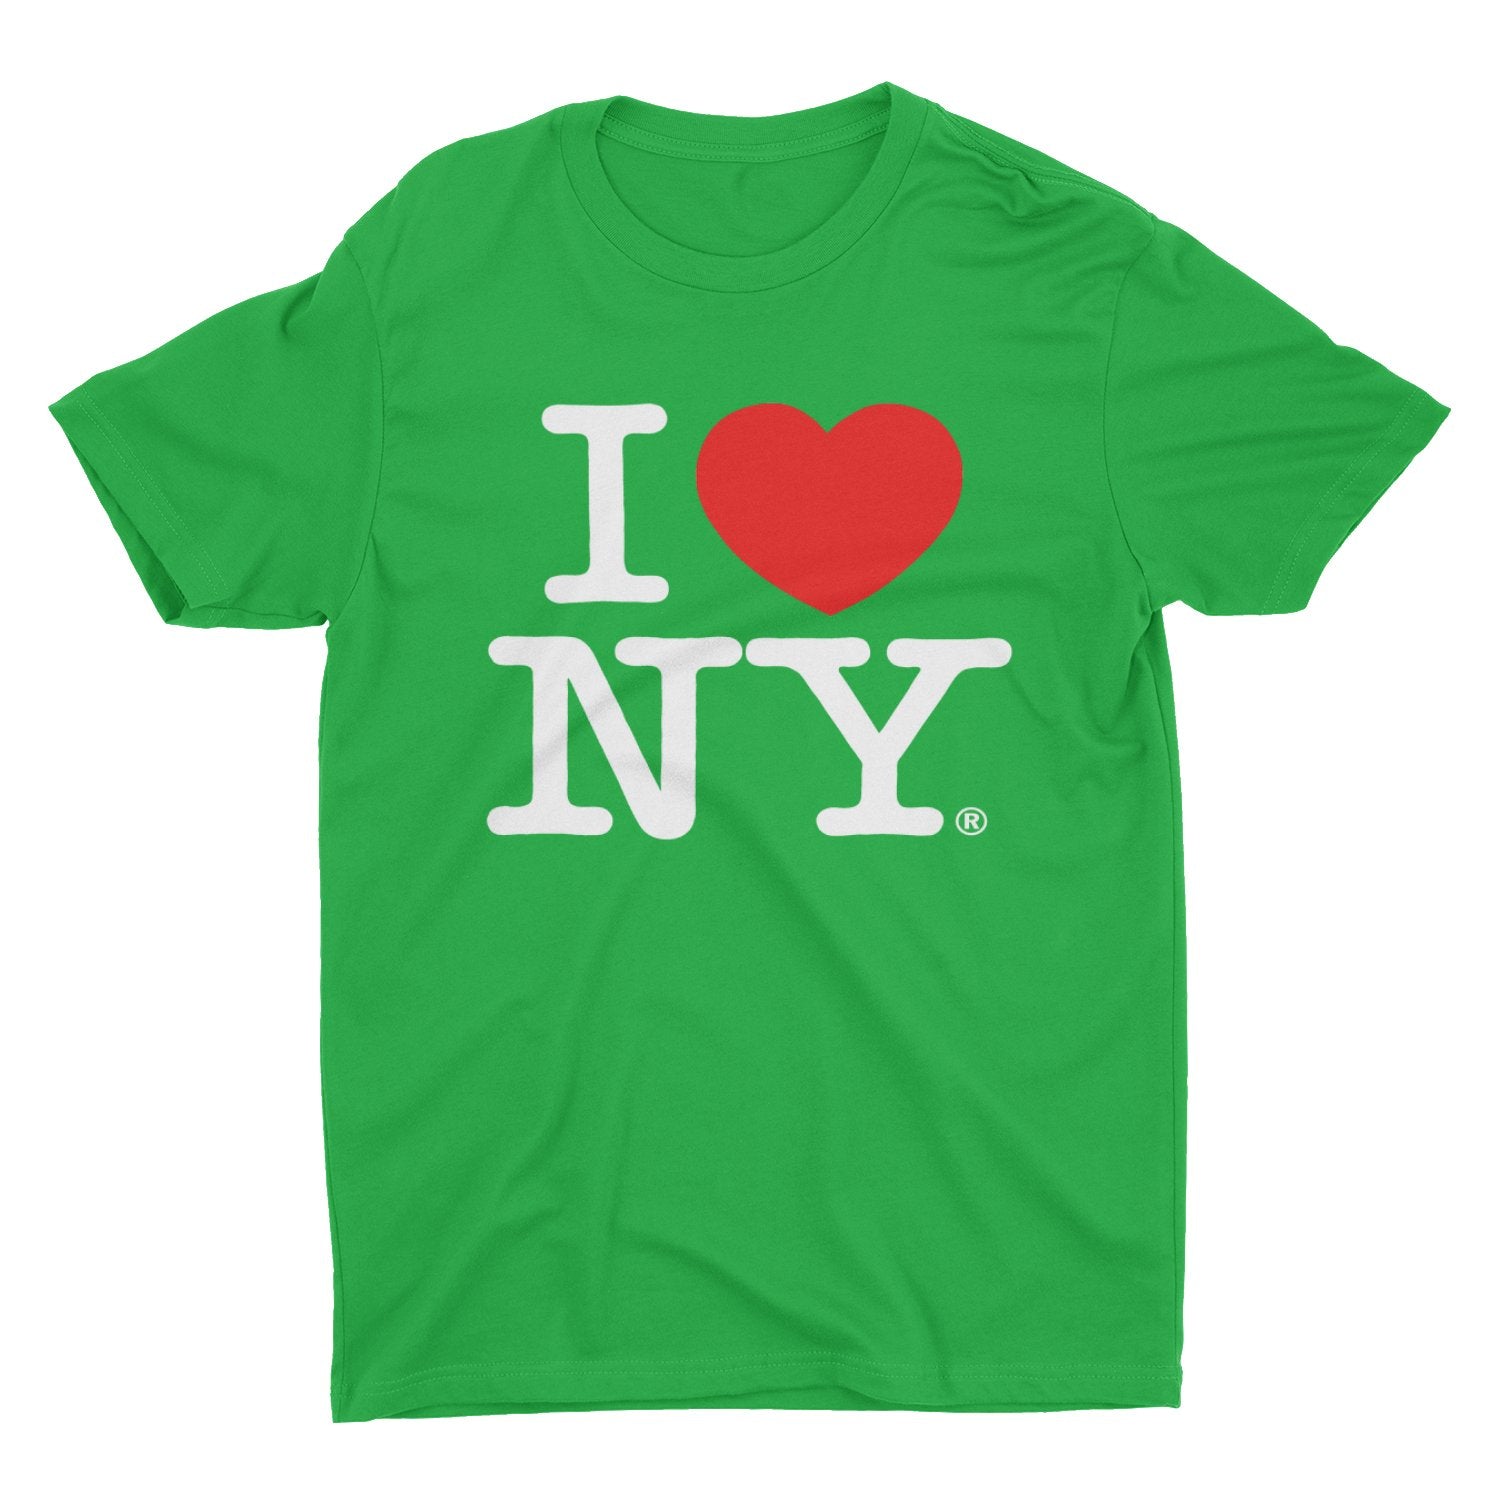 I Love NY Men's Unisex Tee Green